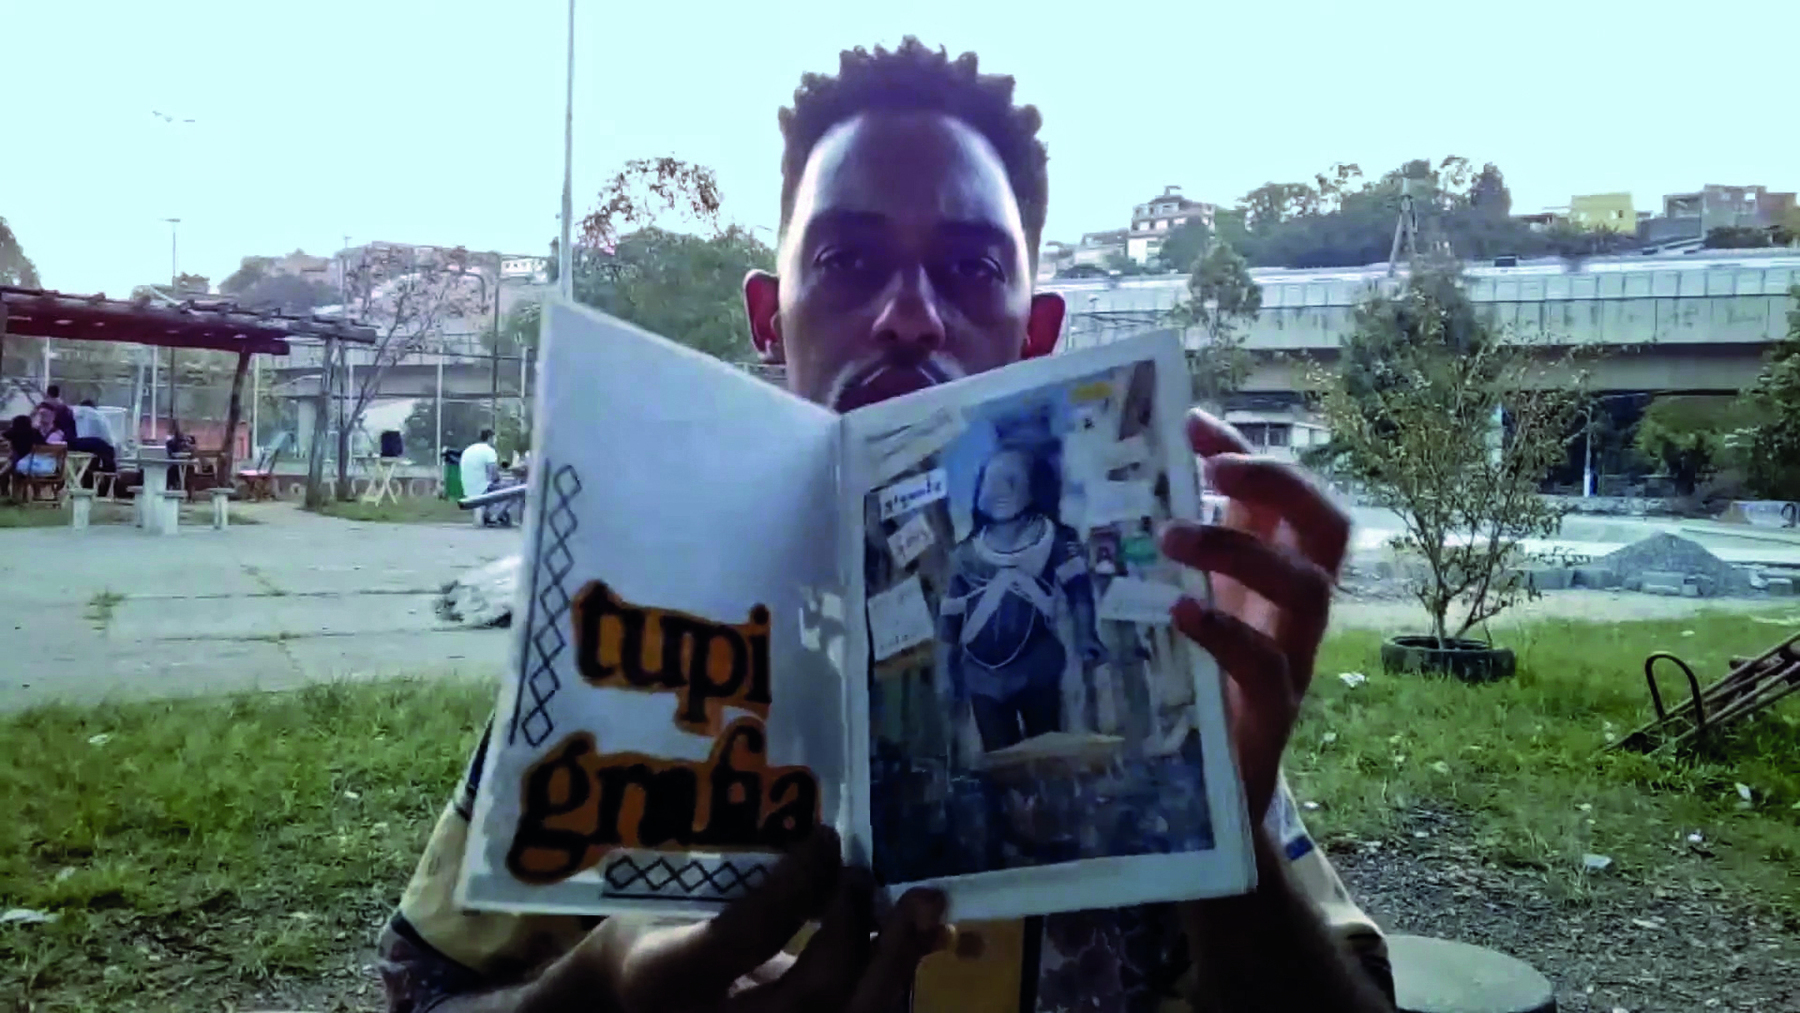 Cena de vídeo. Roger na praça com um fanzine aberto. À esquerda, um título em recortes de letras grandes:  TUPI GRAFIA. À direita, fotomontagem.